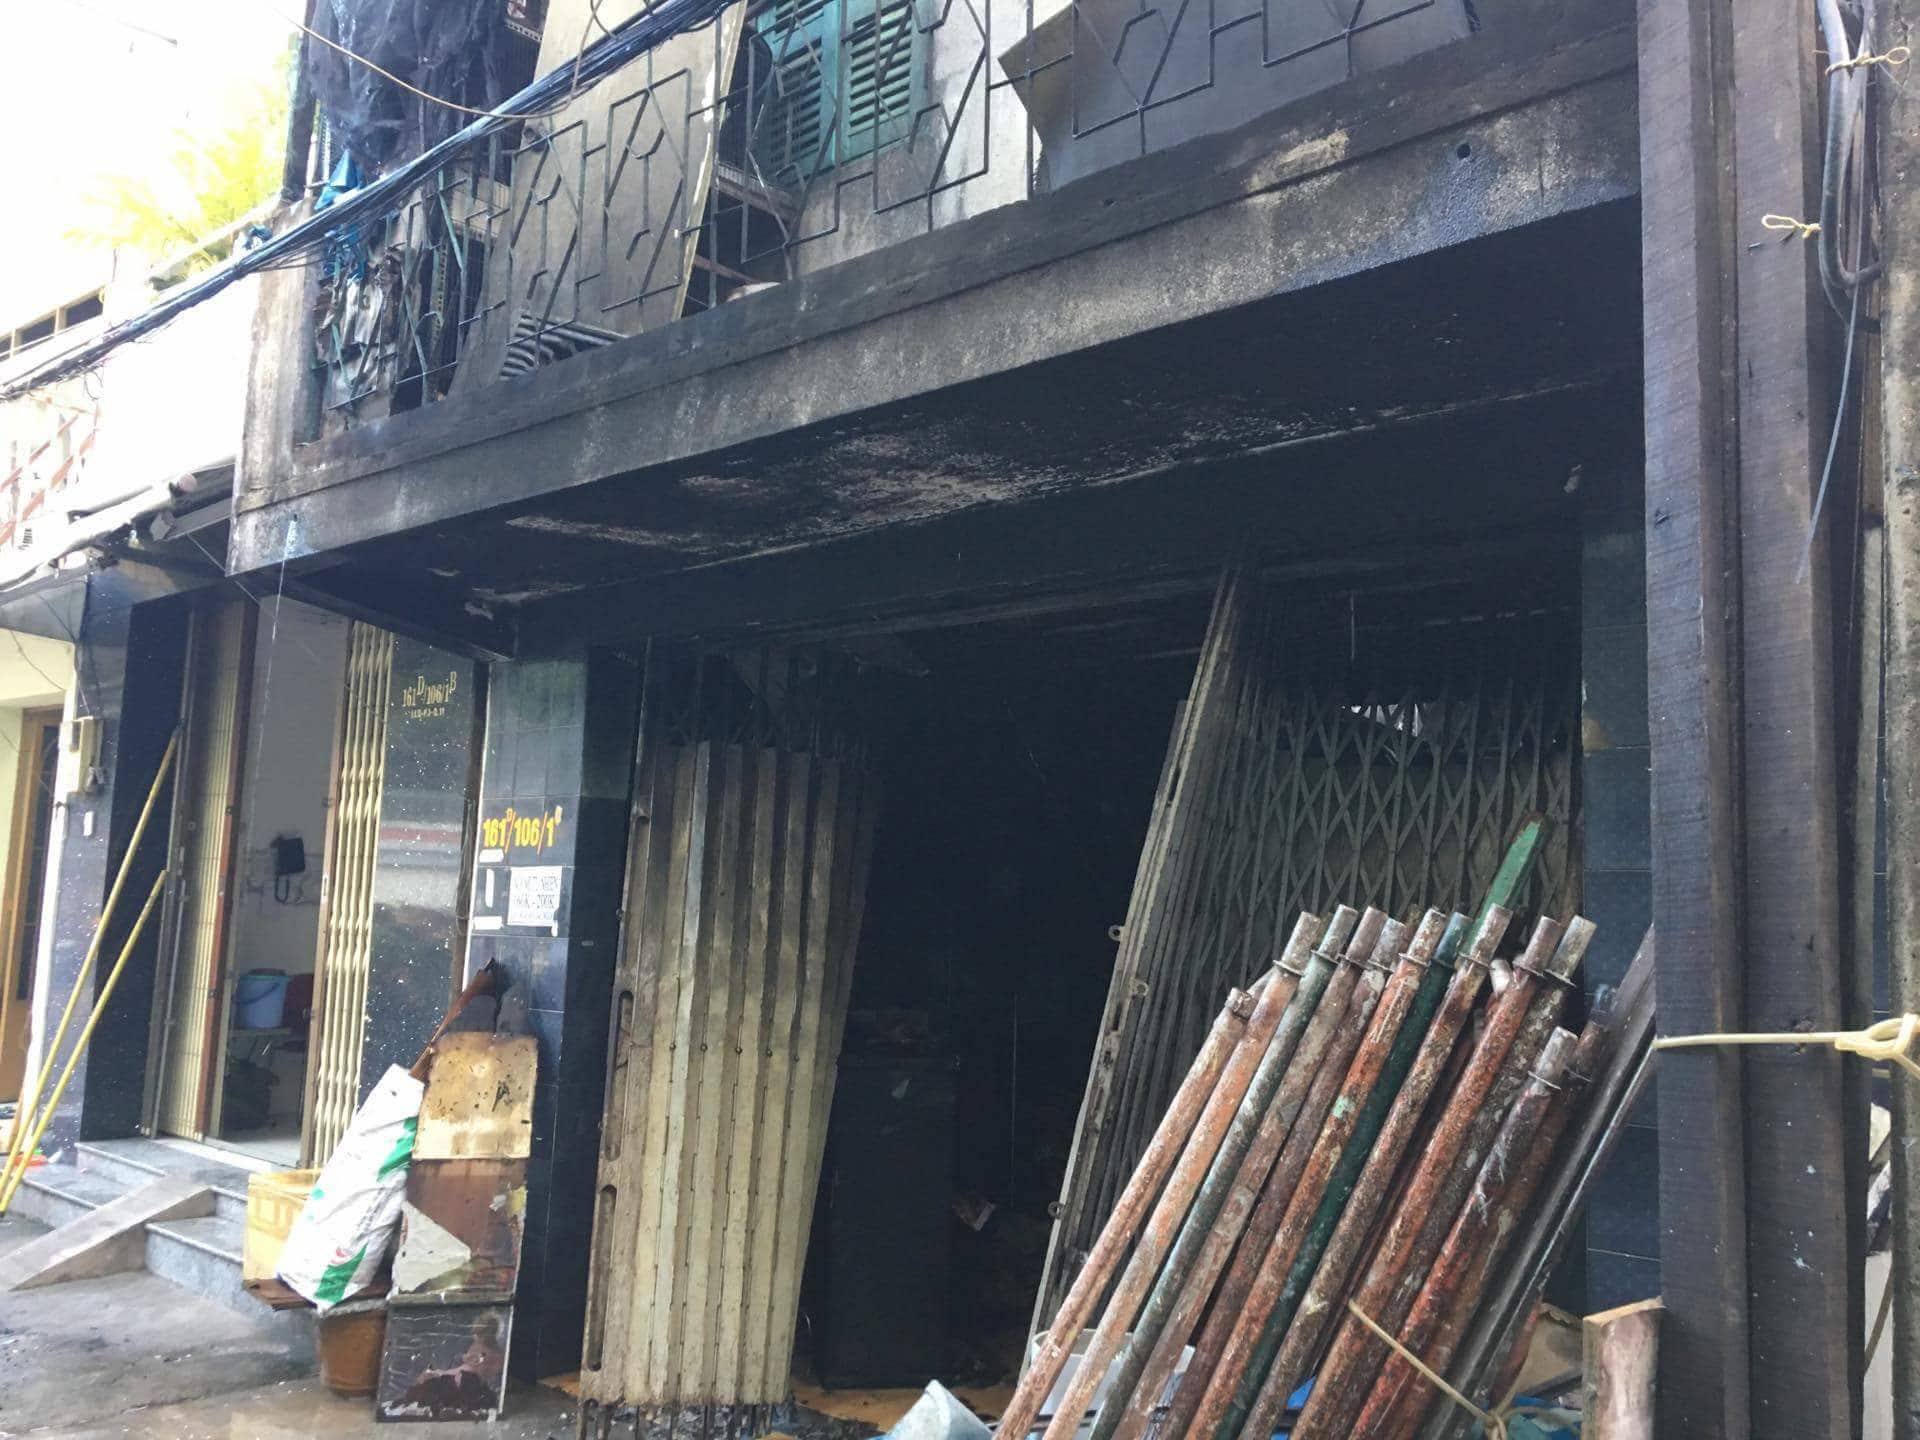 3 mẹ con tử vong trong căn nhà rực lửa ở Sài Gòn - 1